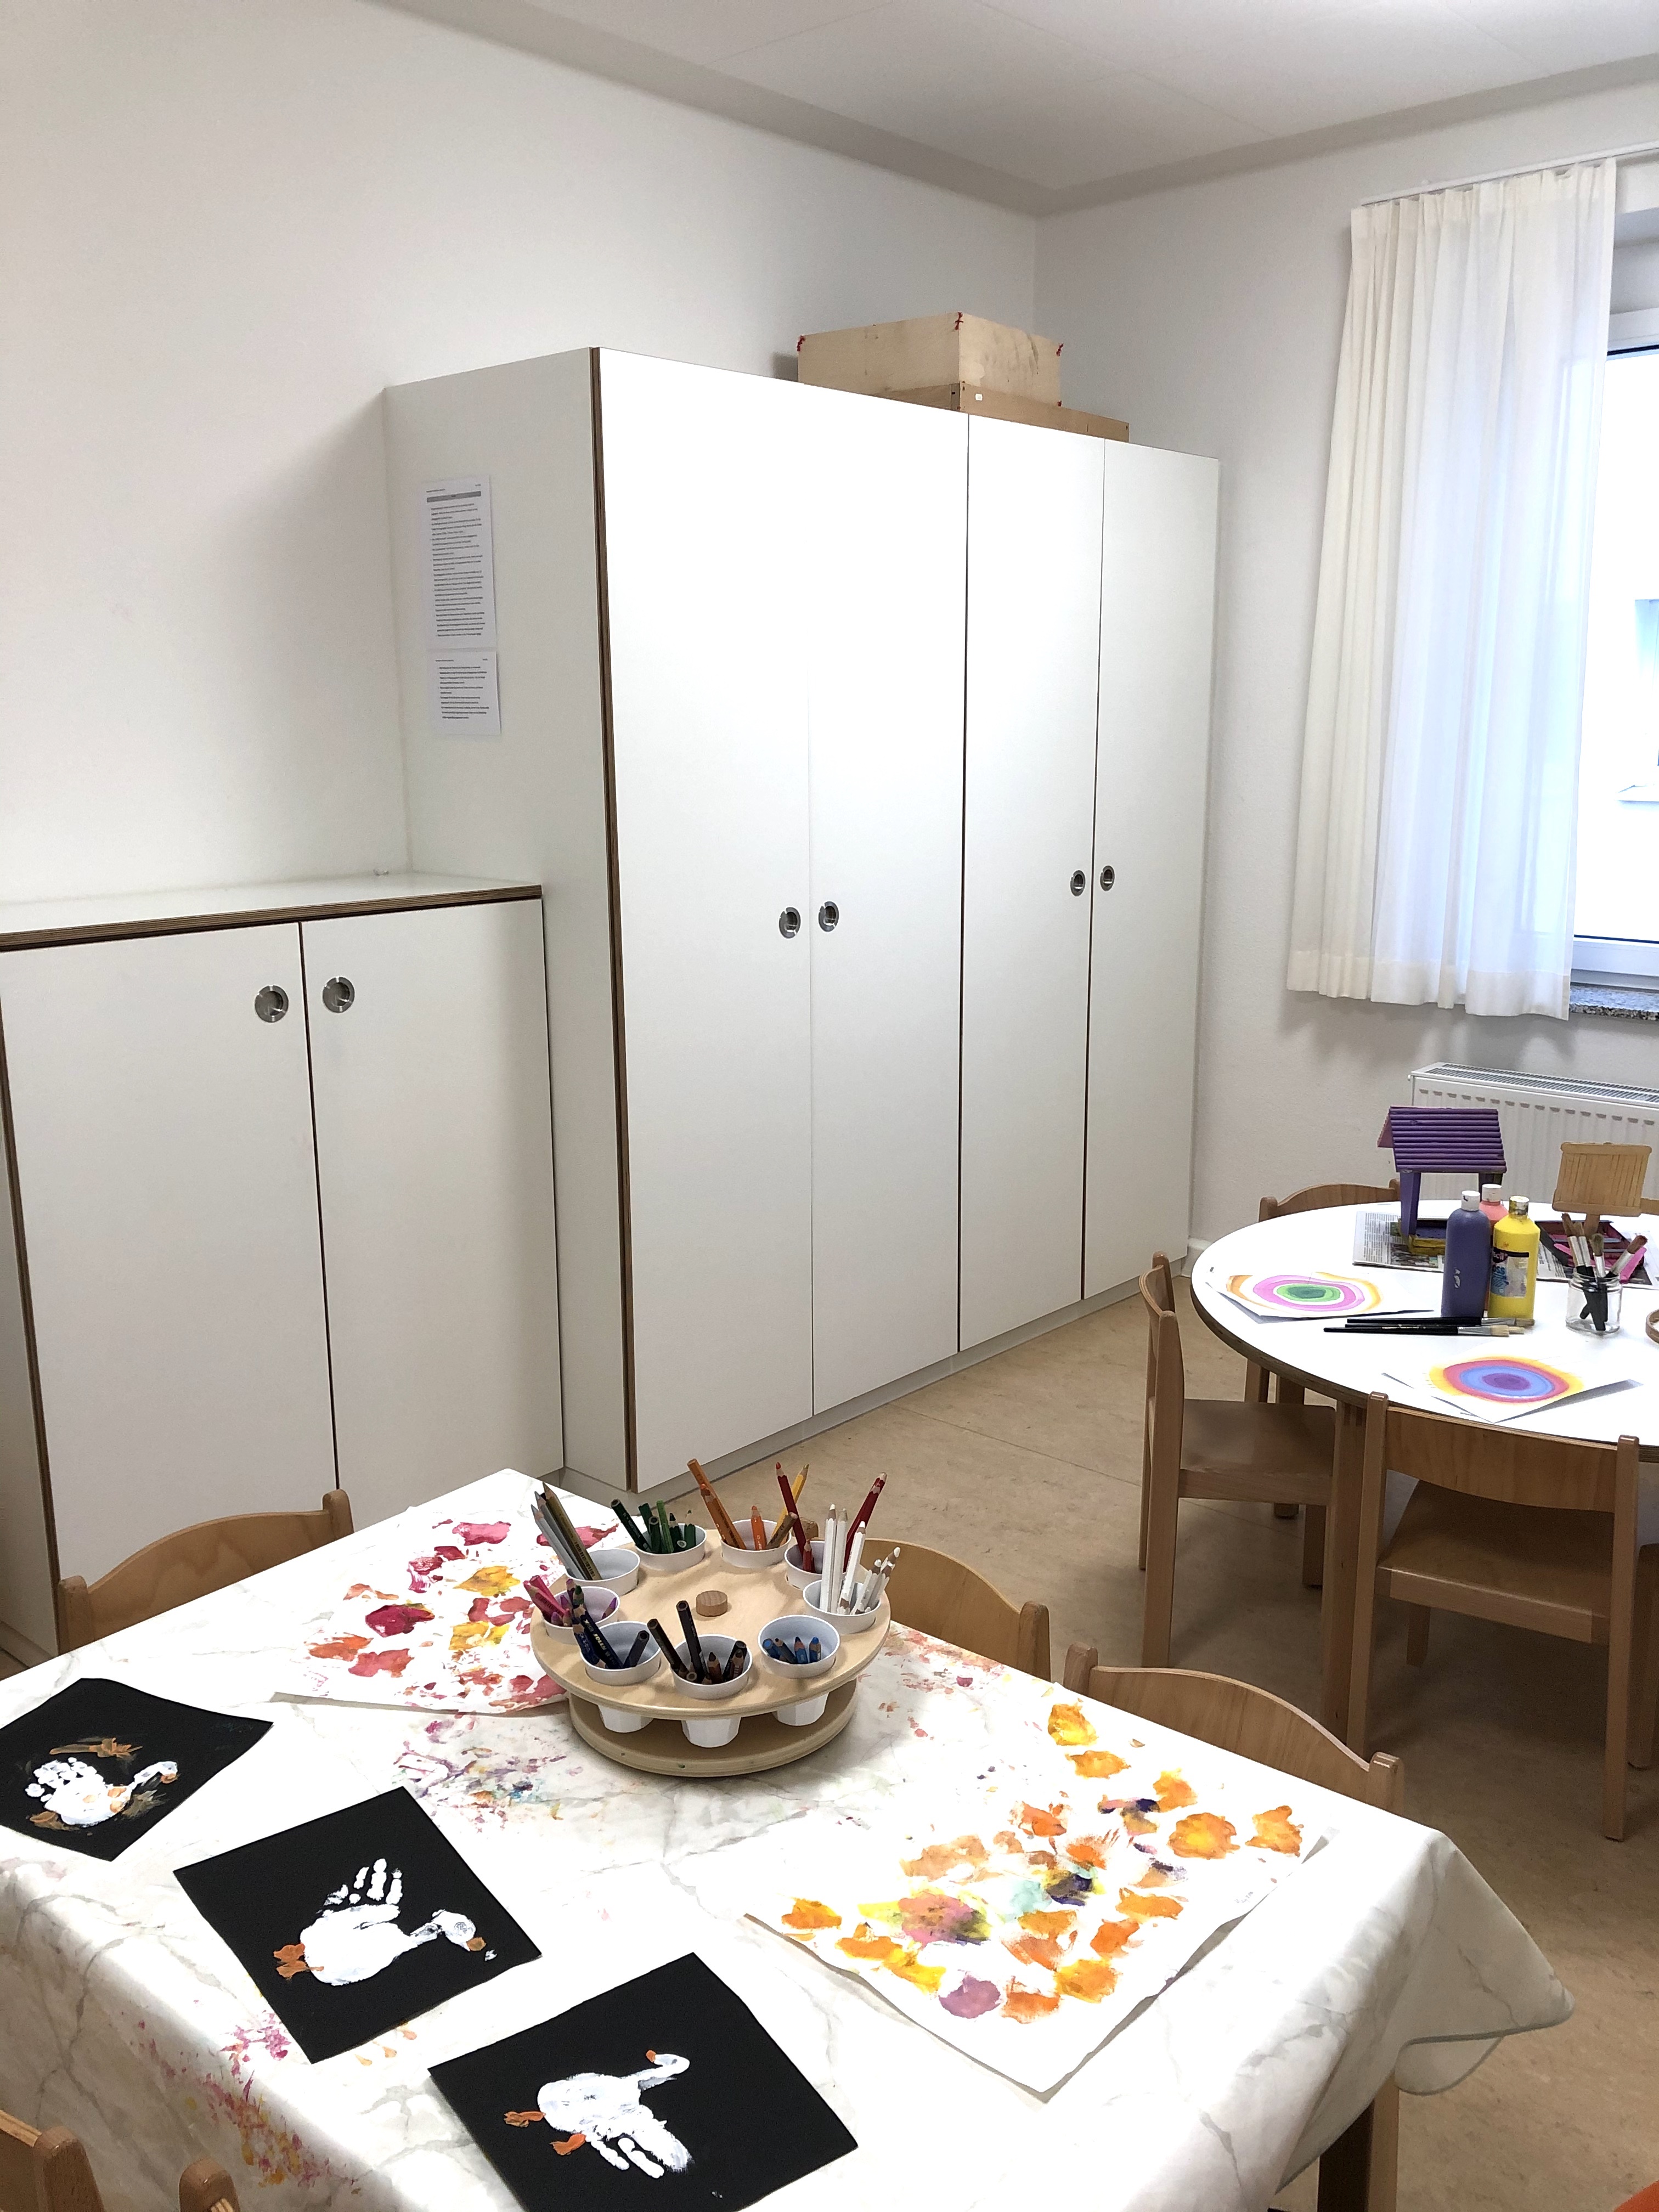 Das Bild zeigt das Atelier im Kindergarten. Es sind drei weiße Schränke an der Wand erkennbar, davor stehen zwei Tische mit Malutensilien.